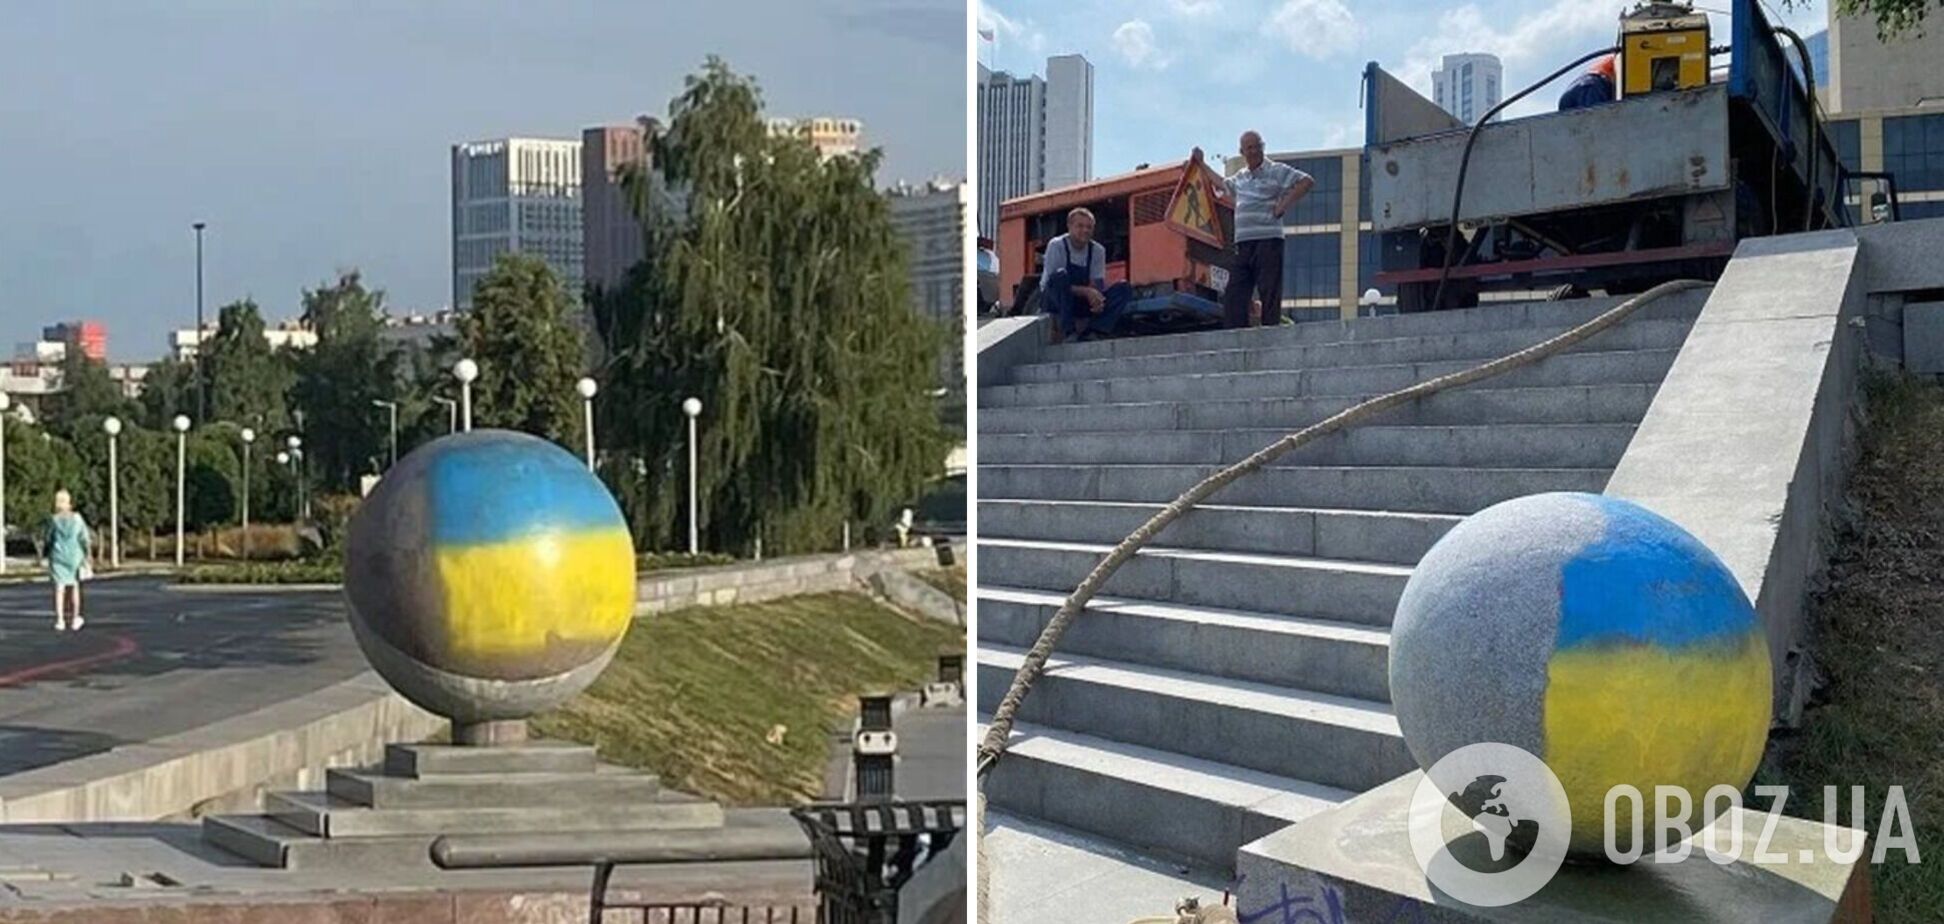 В российском Екатеринбурге на площади появились флаги Украины. Фото